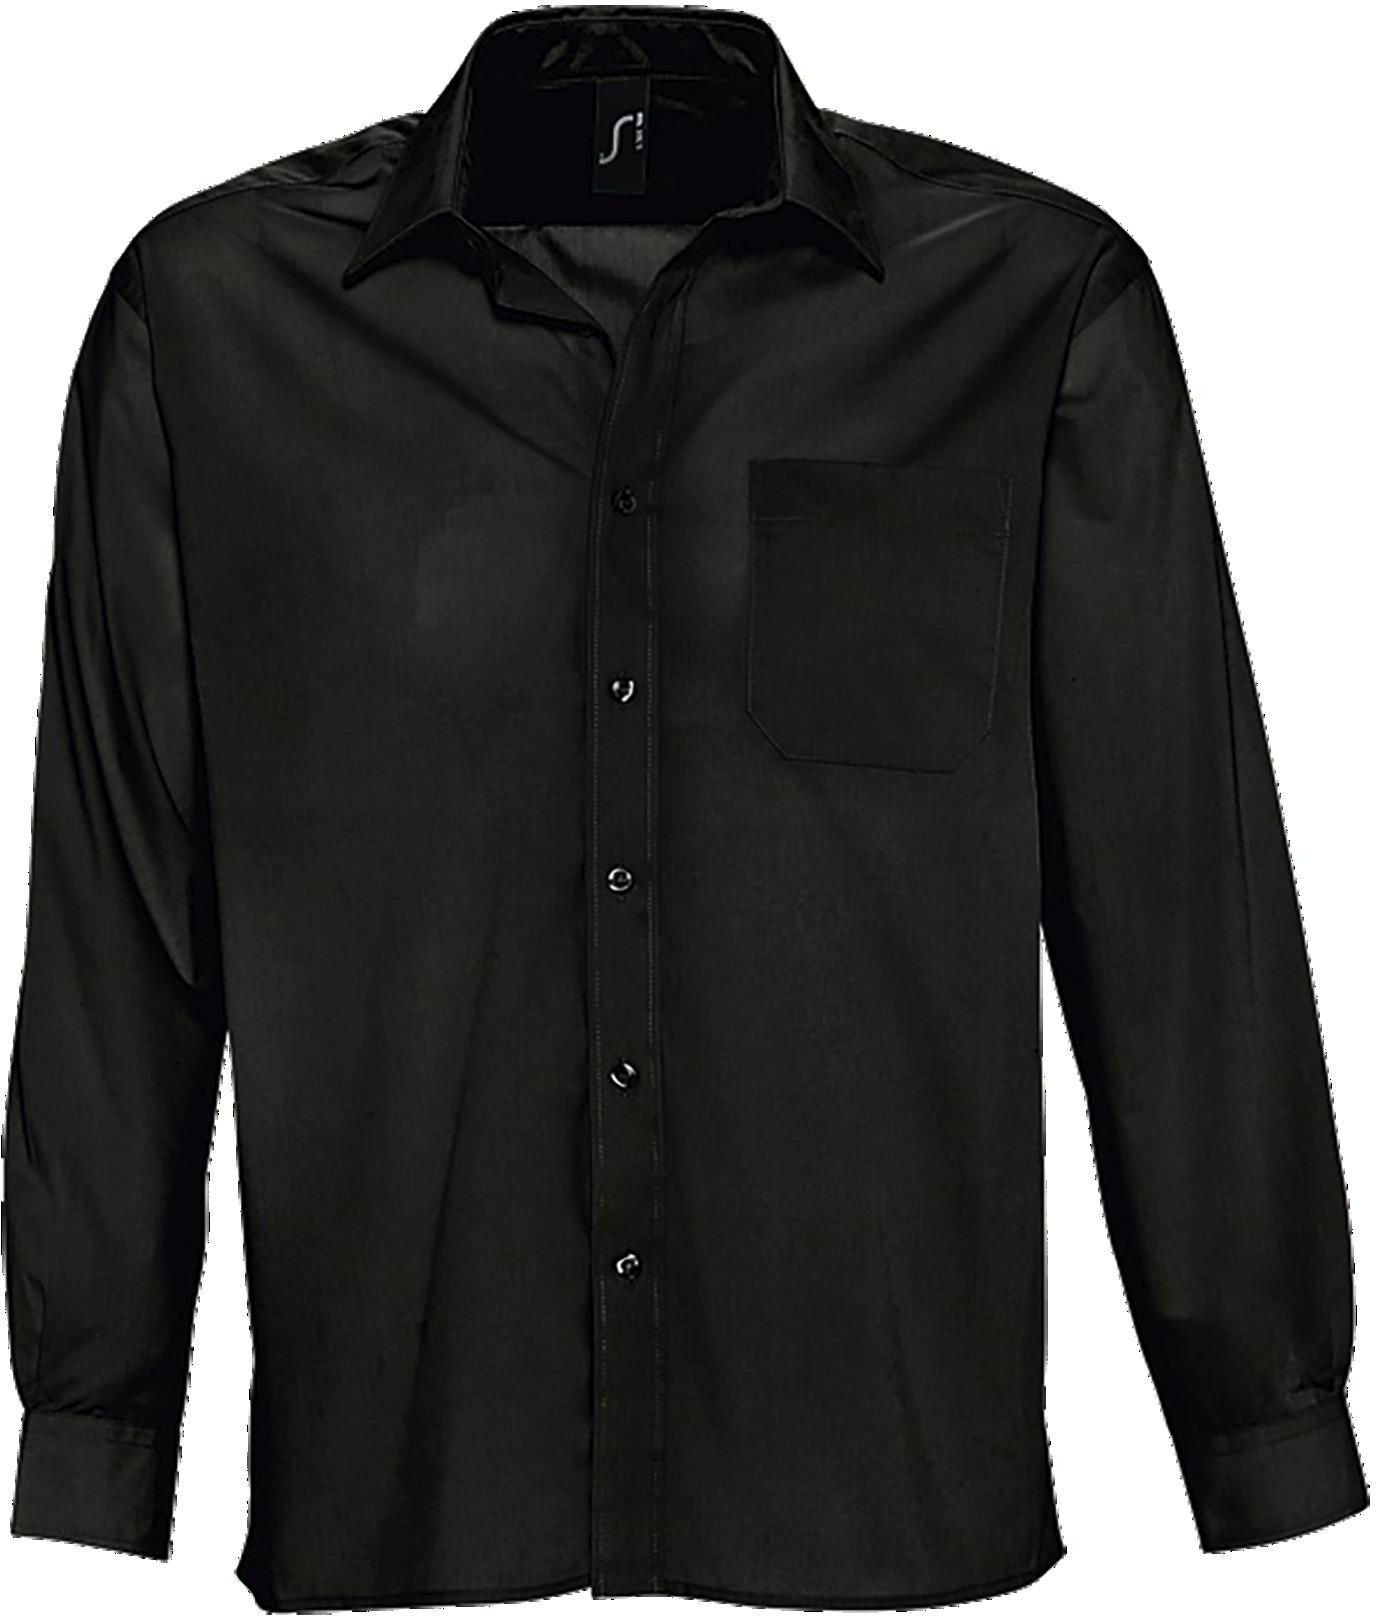 Ανδρικό μακρυμάνικο πουκάμισο από ποπλίνα Baltimore SOLS 16040 Black